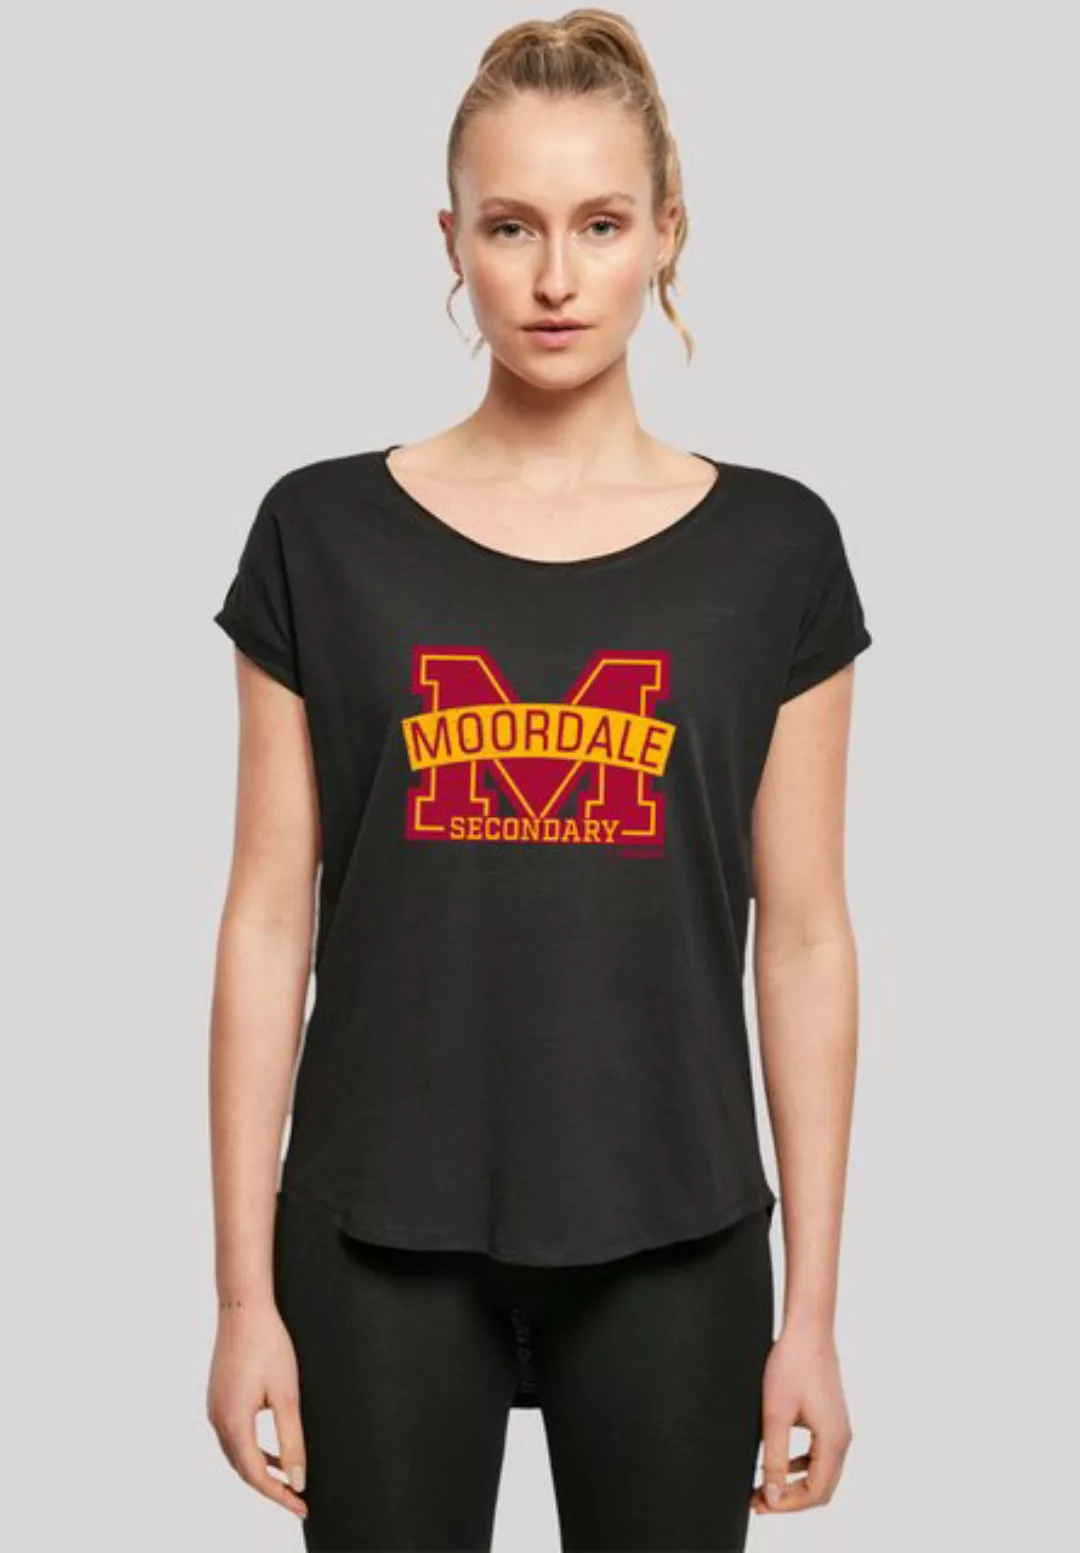 F4NT4STIC T-Shirt Sex Education Moordale Cracked M Logo2 Premium Qualität günstig online kaufen